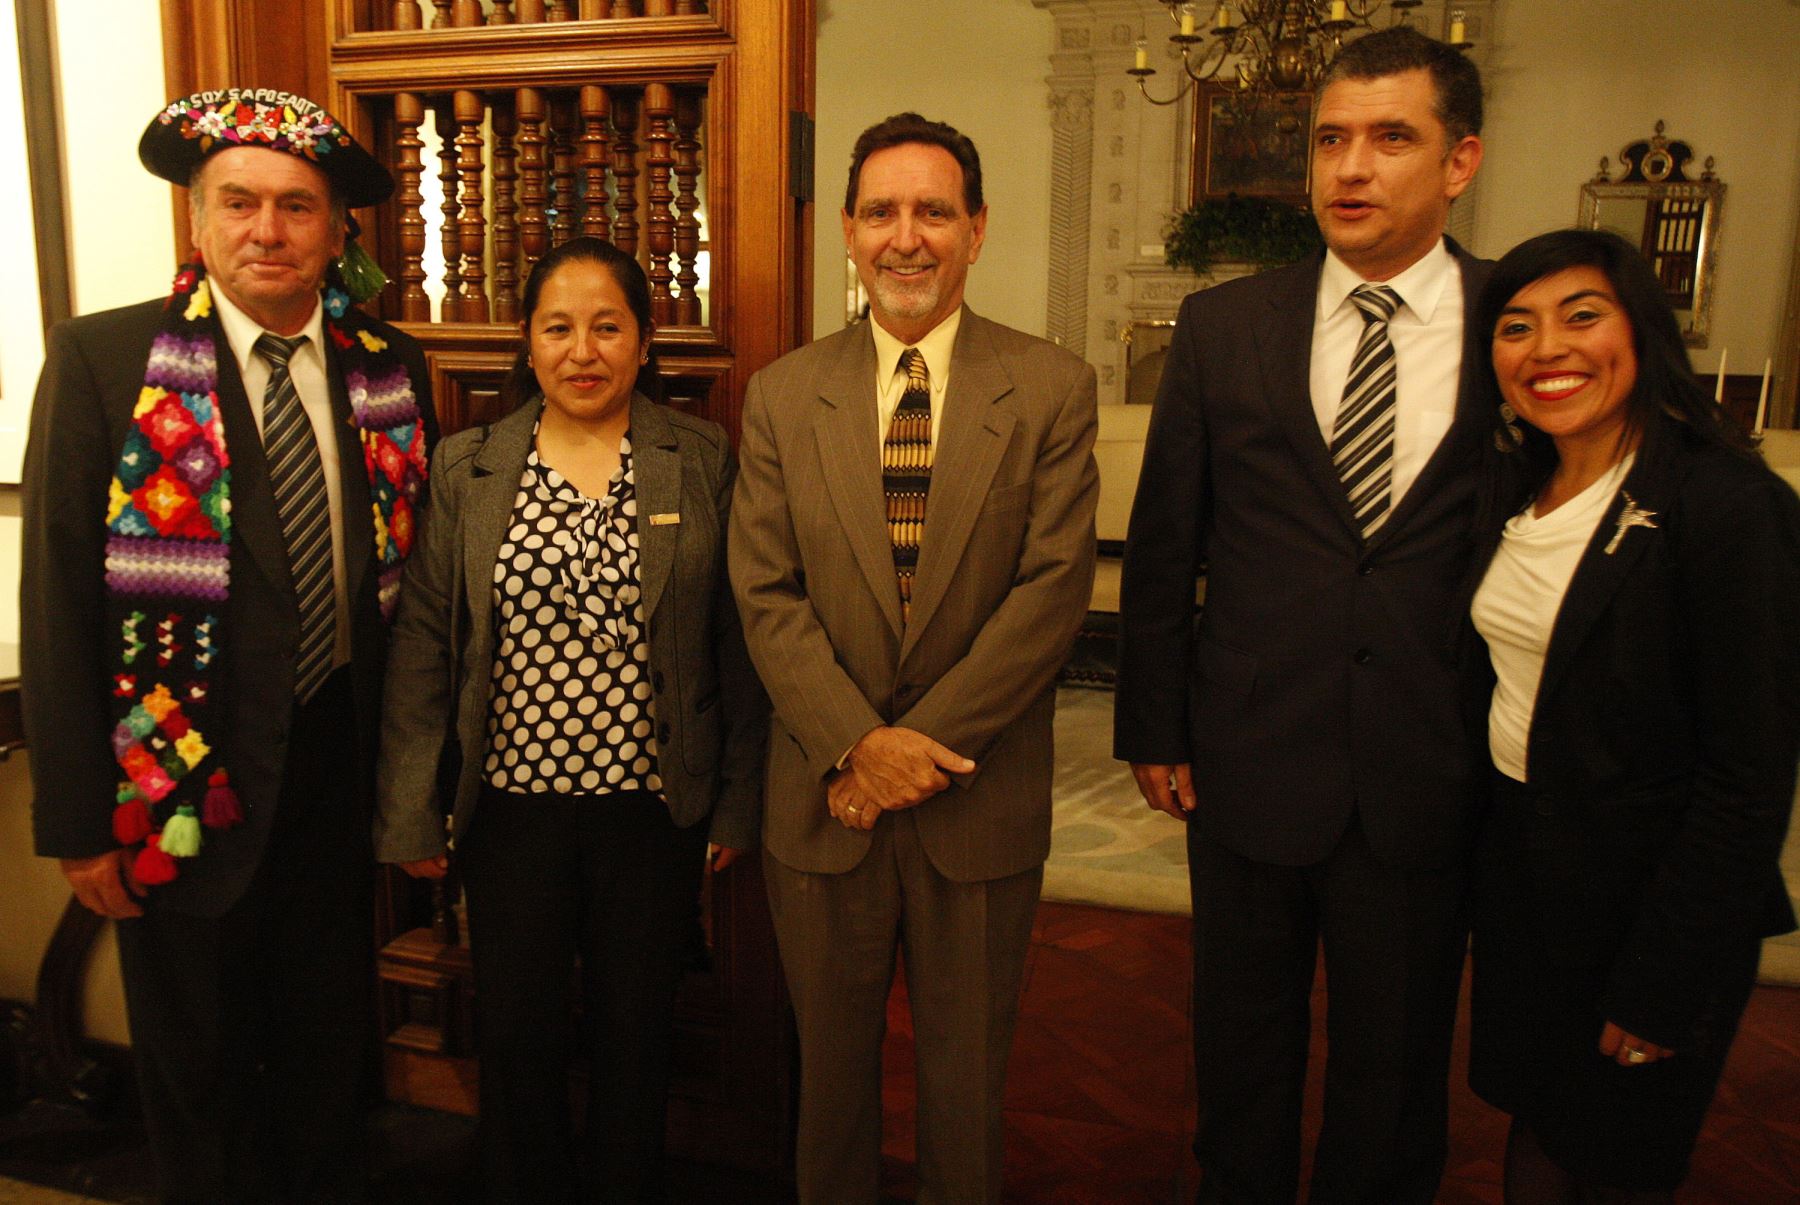 Lawrence J. Gumbiner Jefe de Mision Adjunto de la Embajada de Estados Unidos, entrega más de 200,000 mil dolares en apoyo al patrimonio cultural del Perú. ANDINA/Héctor Vinces